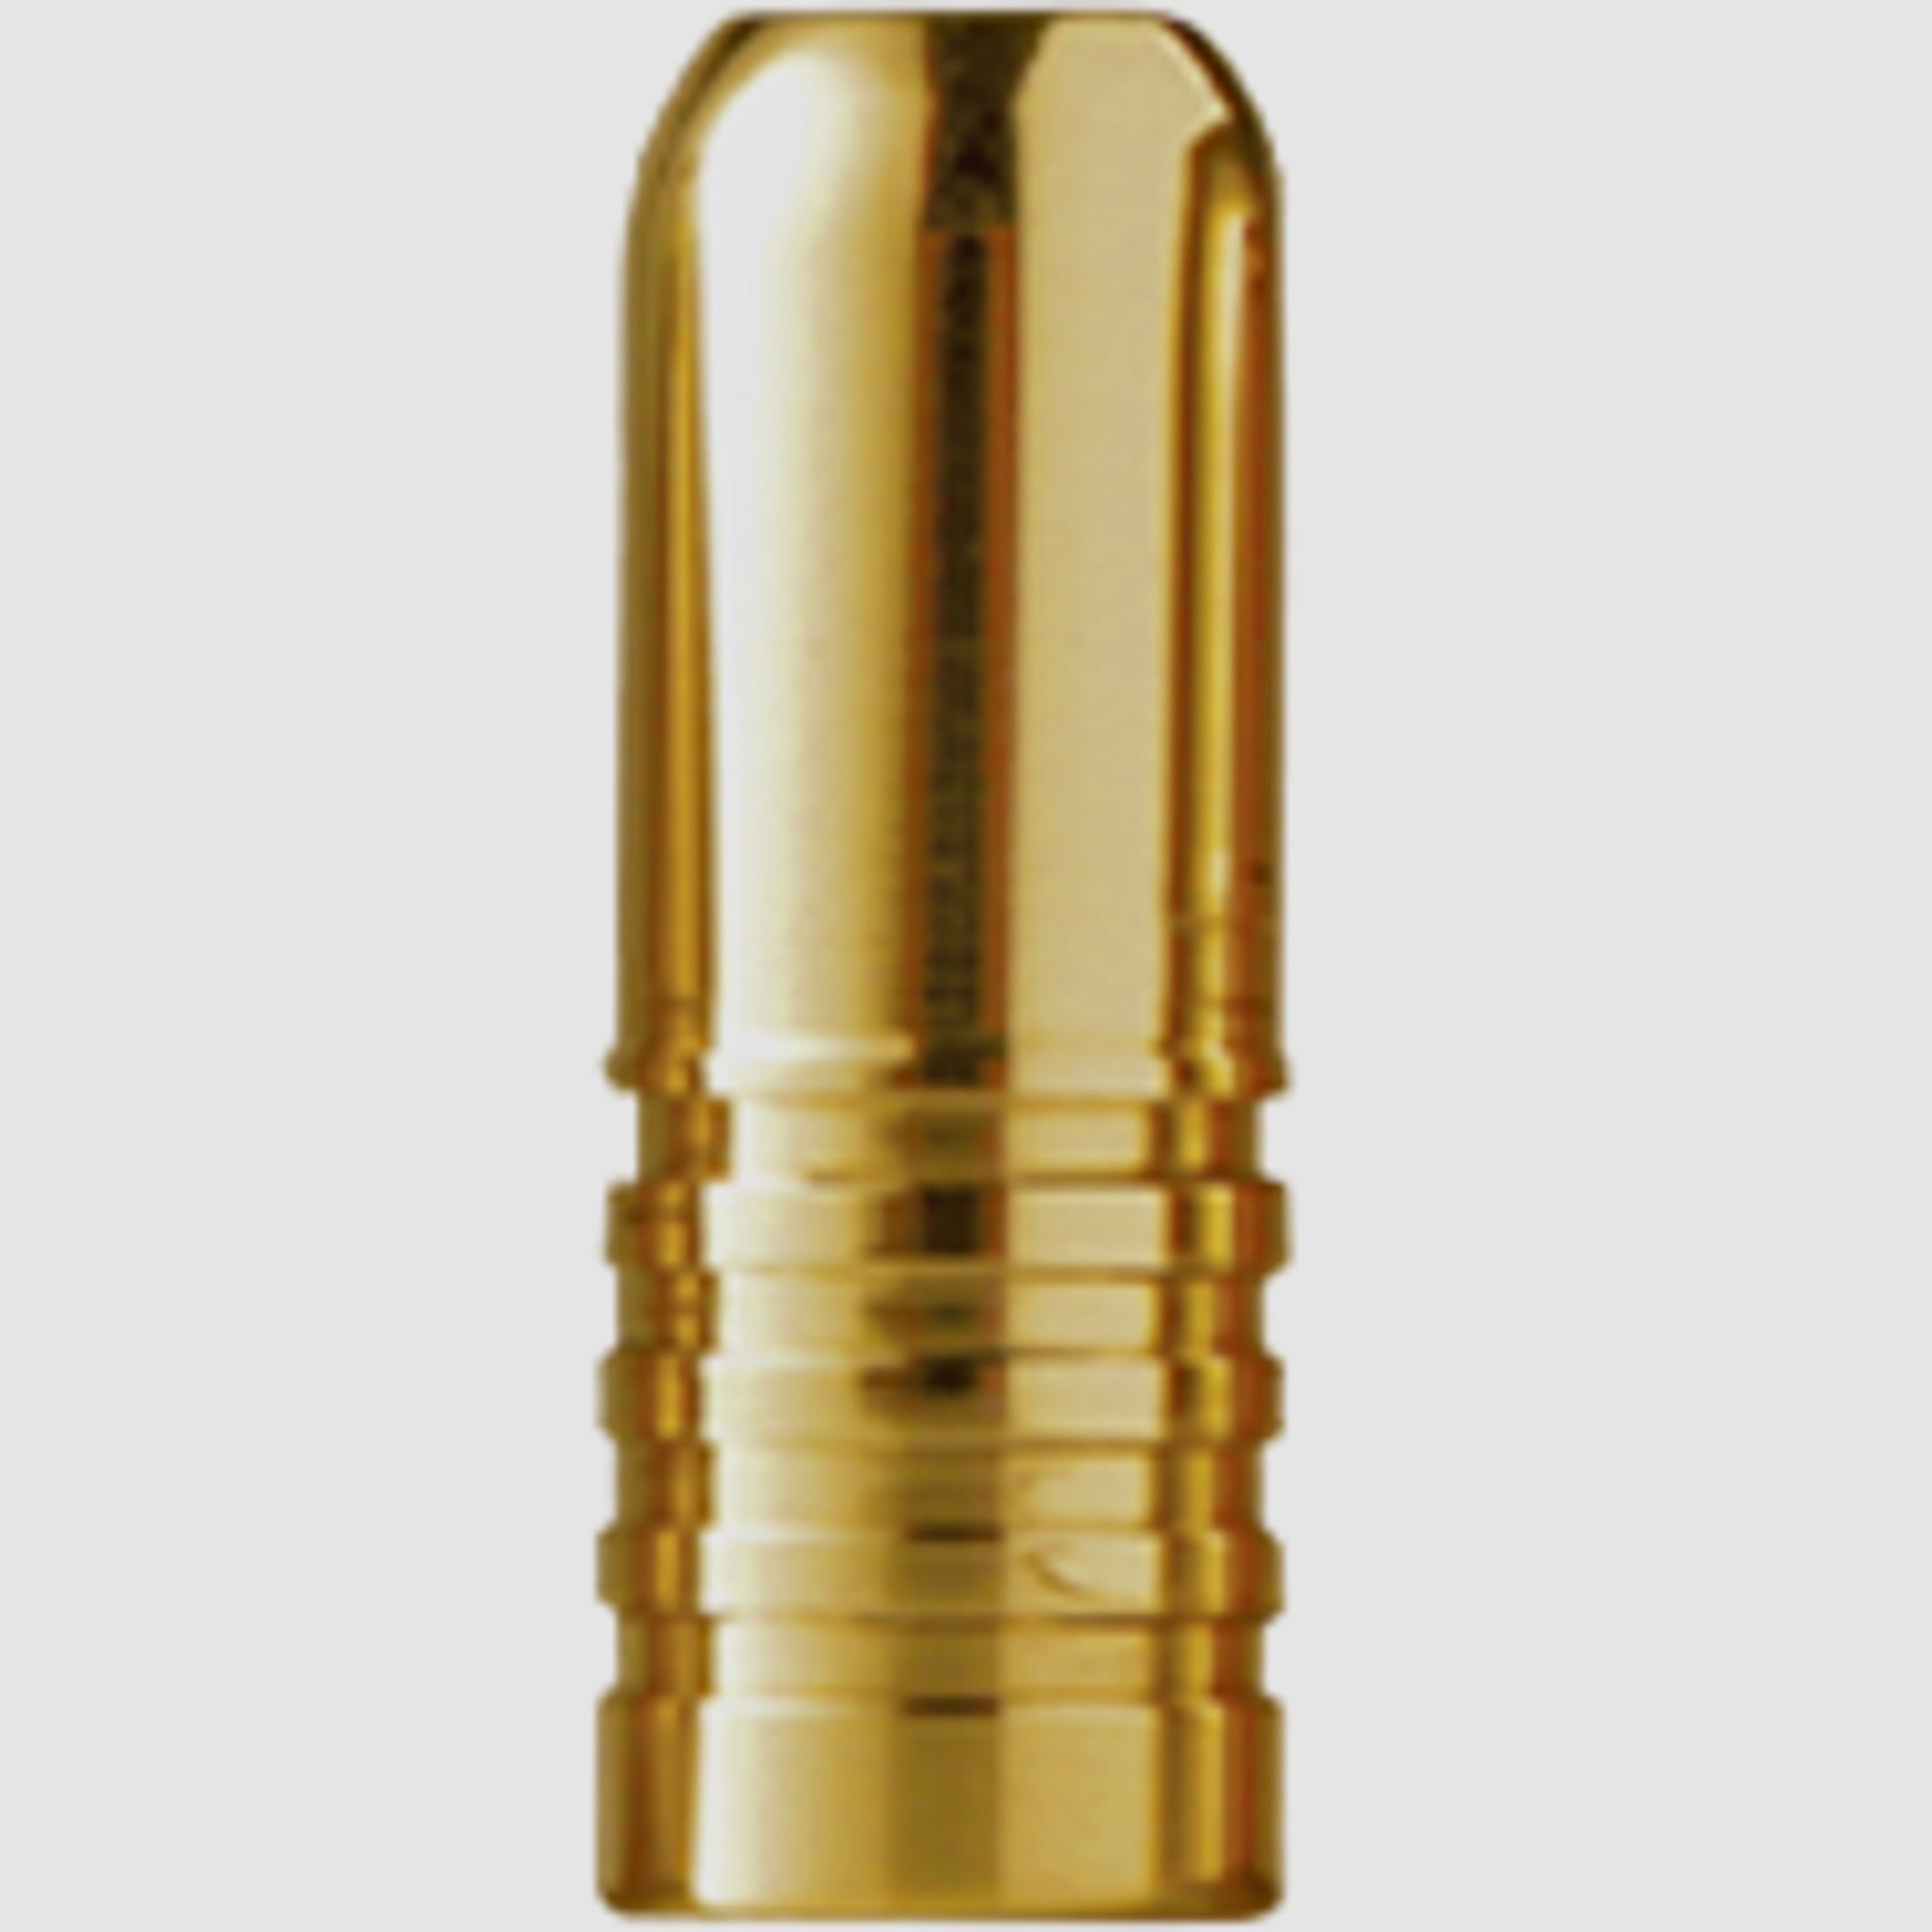 Barnes Geschoss .509 / 12,90mm 570GR Banded Solid 20 Stück